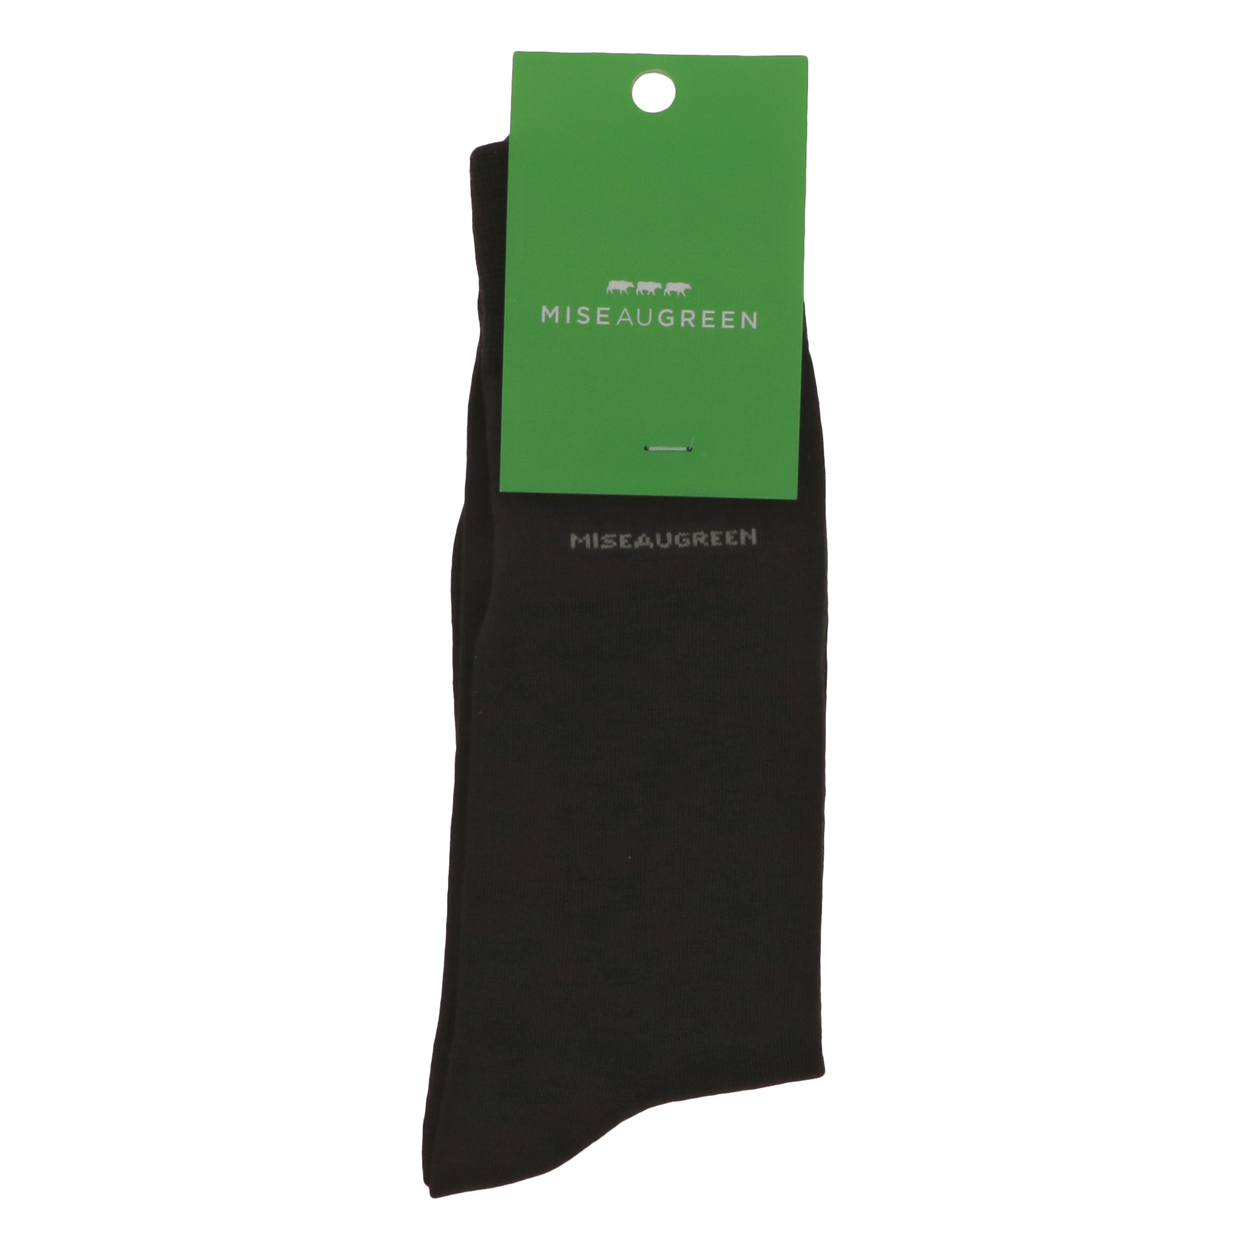 chaussettes hautes mise au green marrons avec nom de la marque